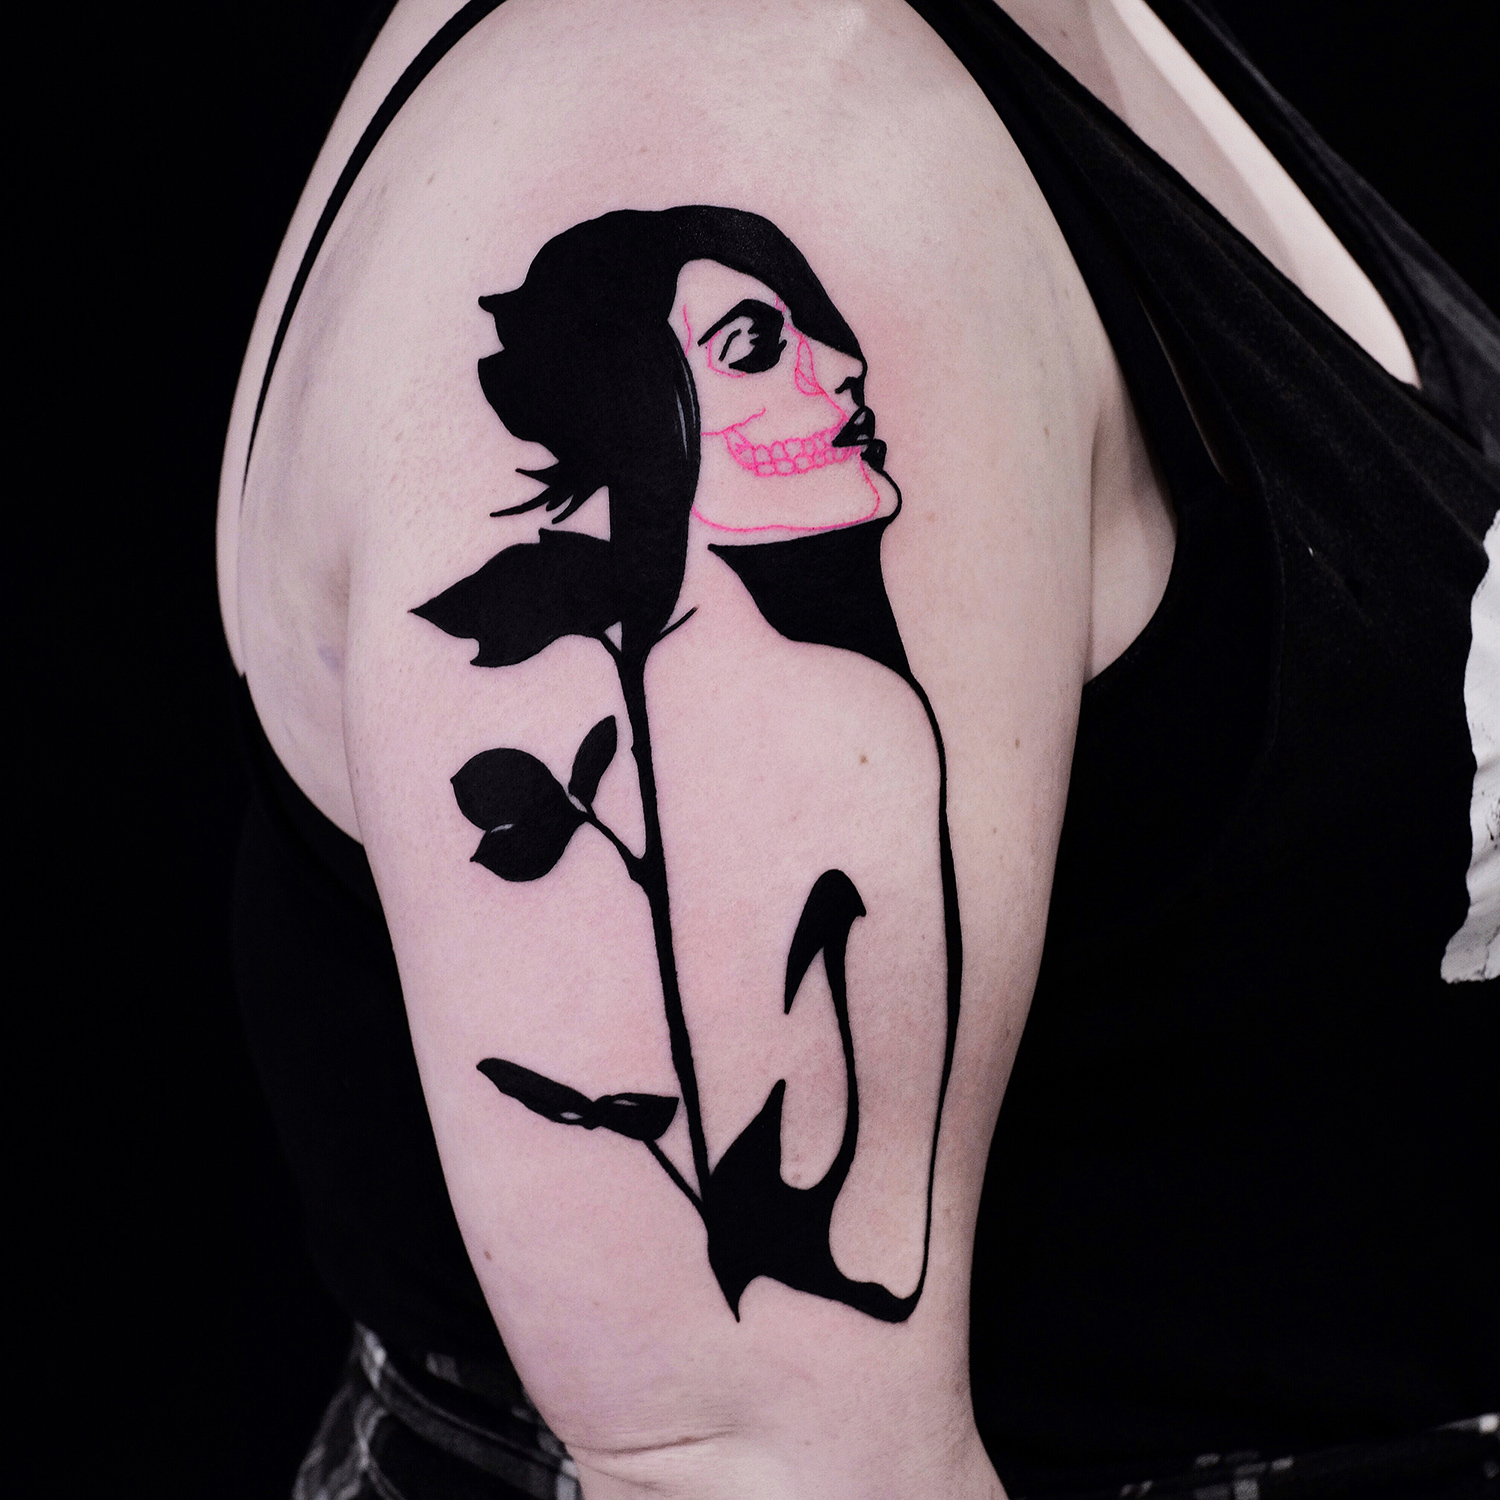 The Wolf Rosario, Rosario Sortino - rose portrait tattoo